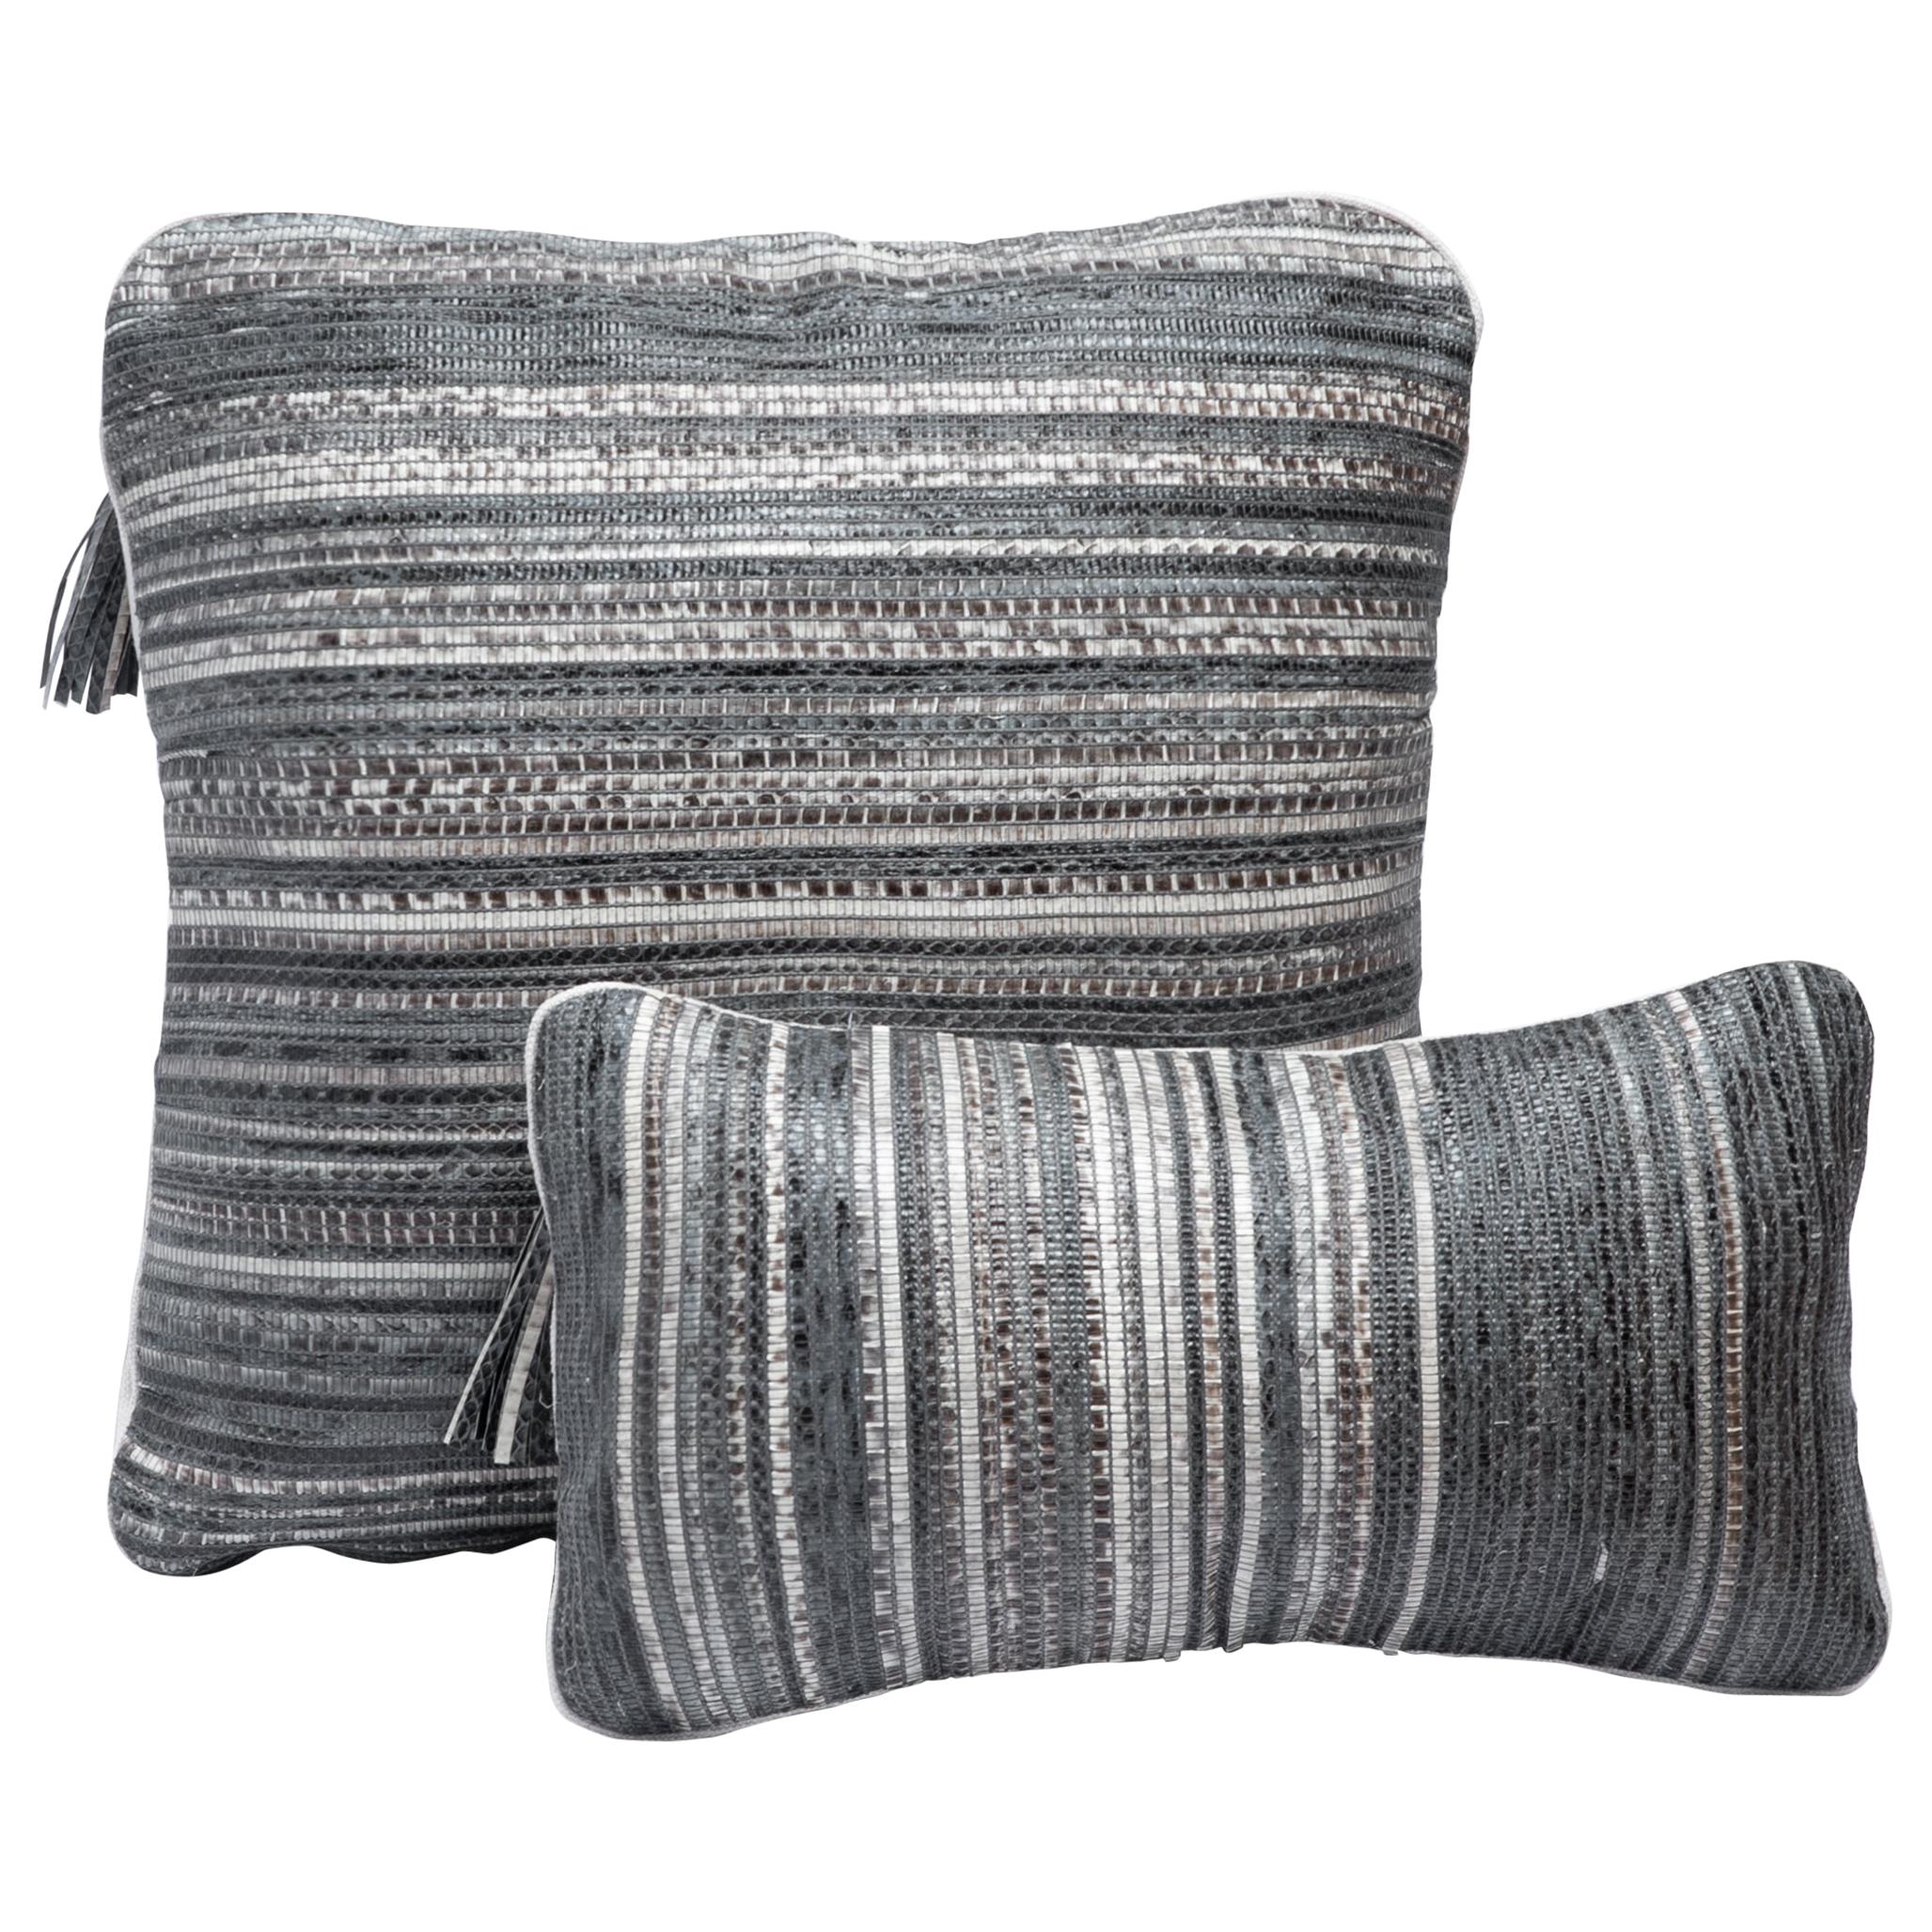 Pillow Set in Woven Snakeskin by Kifu Paris